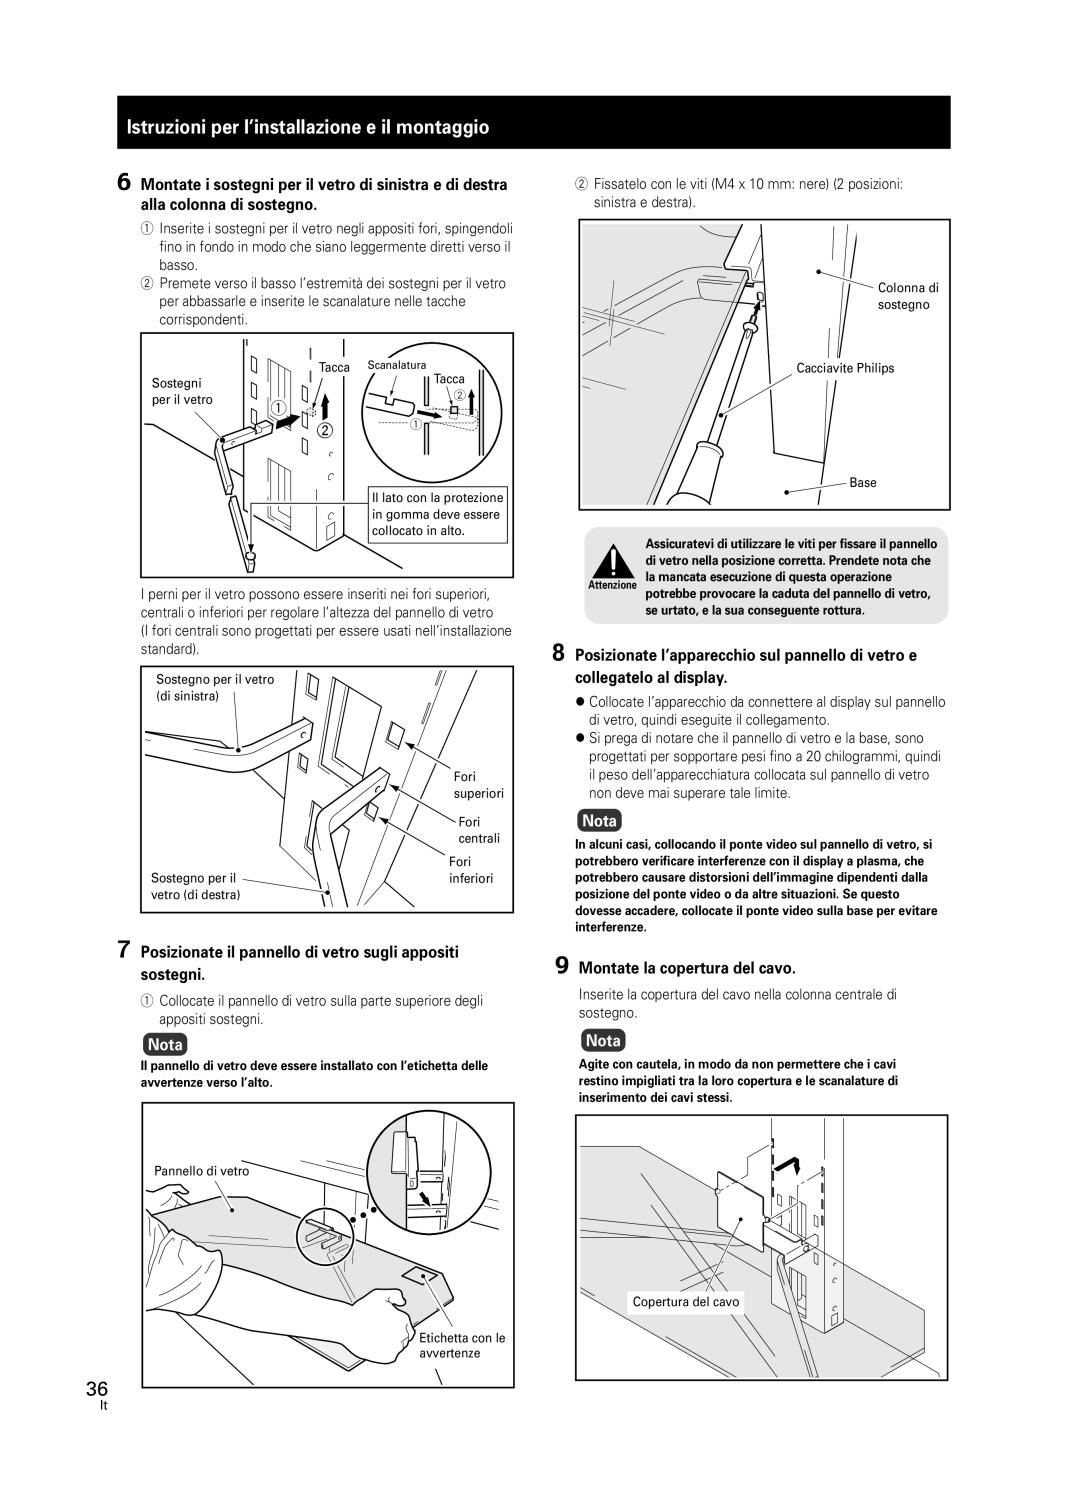 Pioneer PDK-FS05 manual Istruzioni per l’installazione e il montaggio, Nota, 9Montate la copertura del cavo 